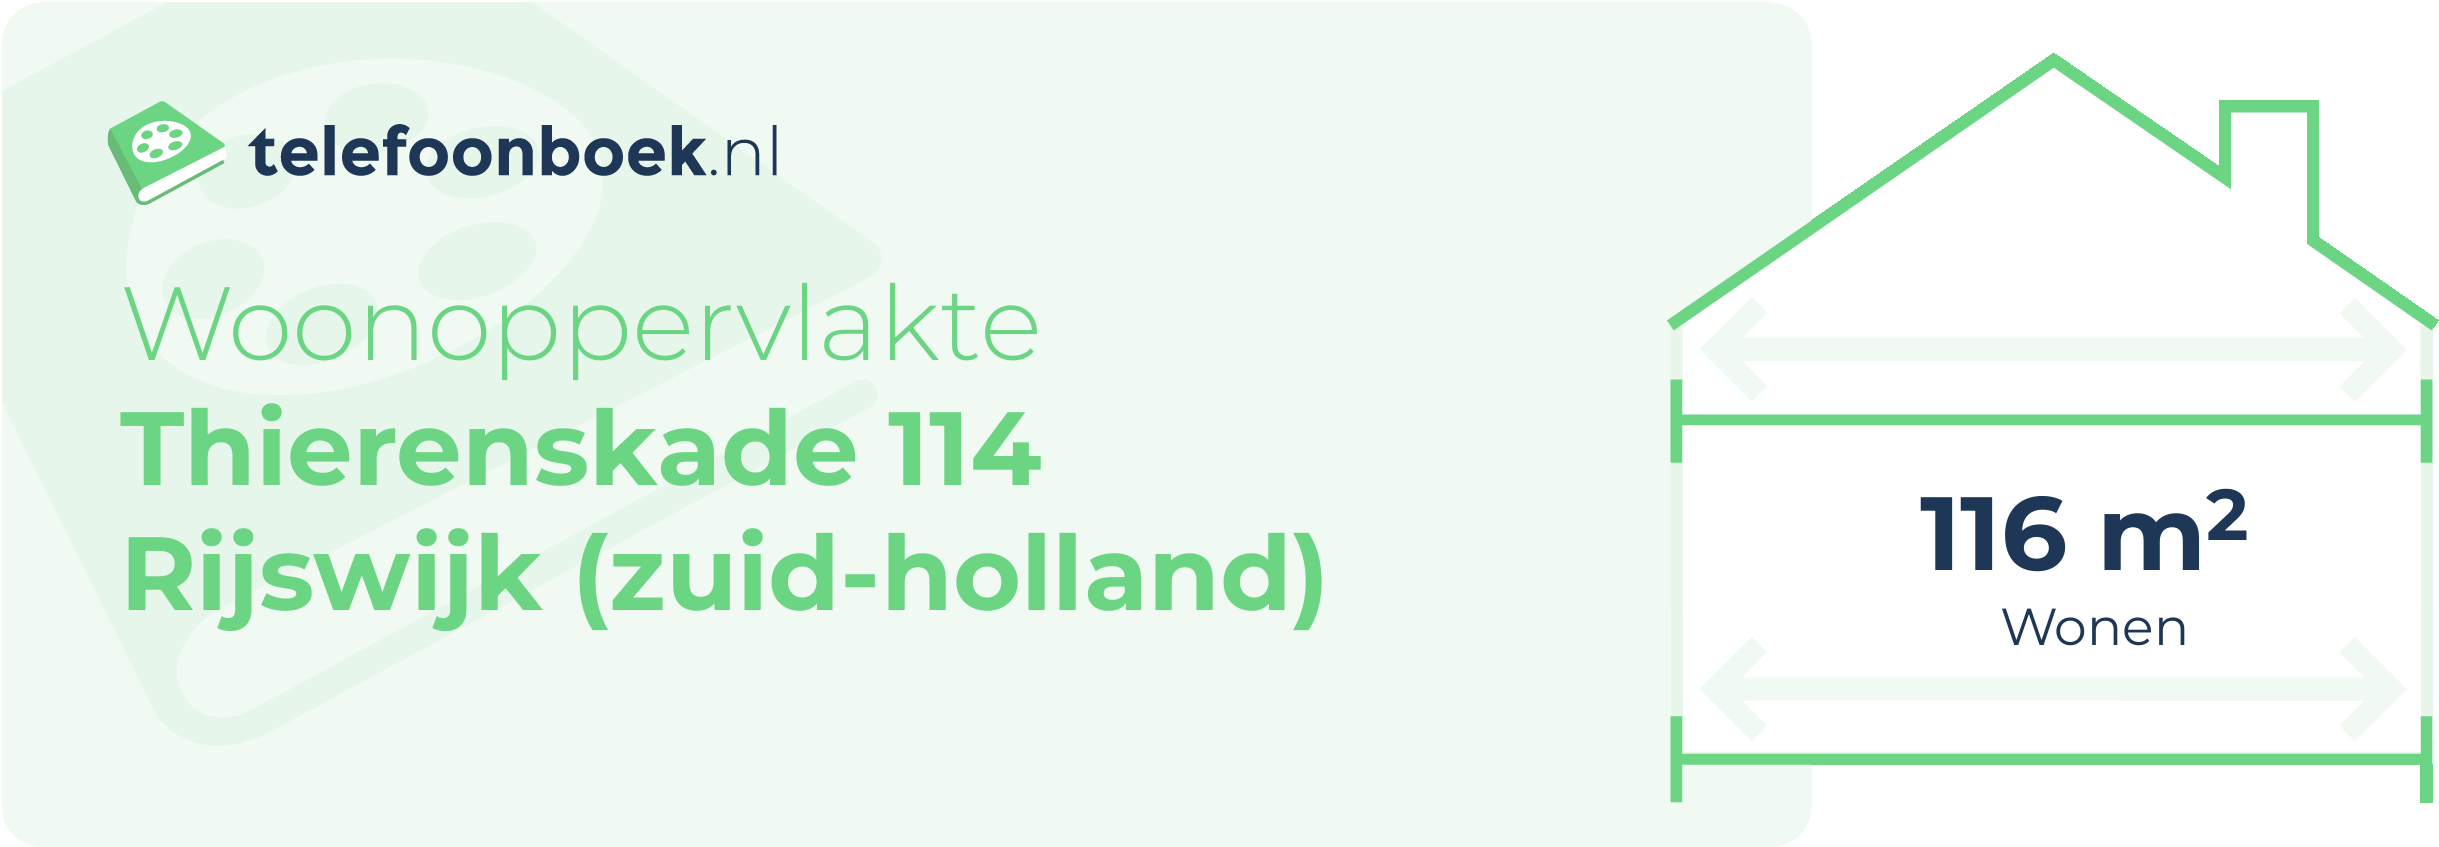 Woonoppervlakte Thierenskade 114 Rijswijk (Zuid-Holland)